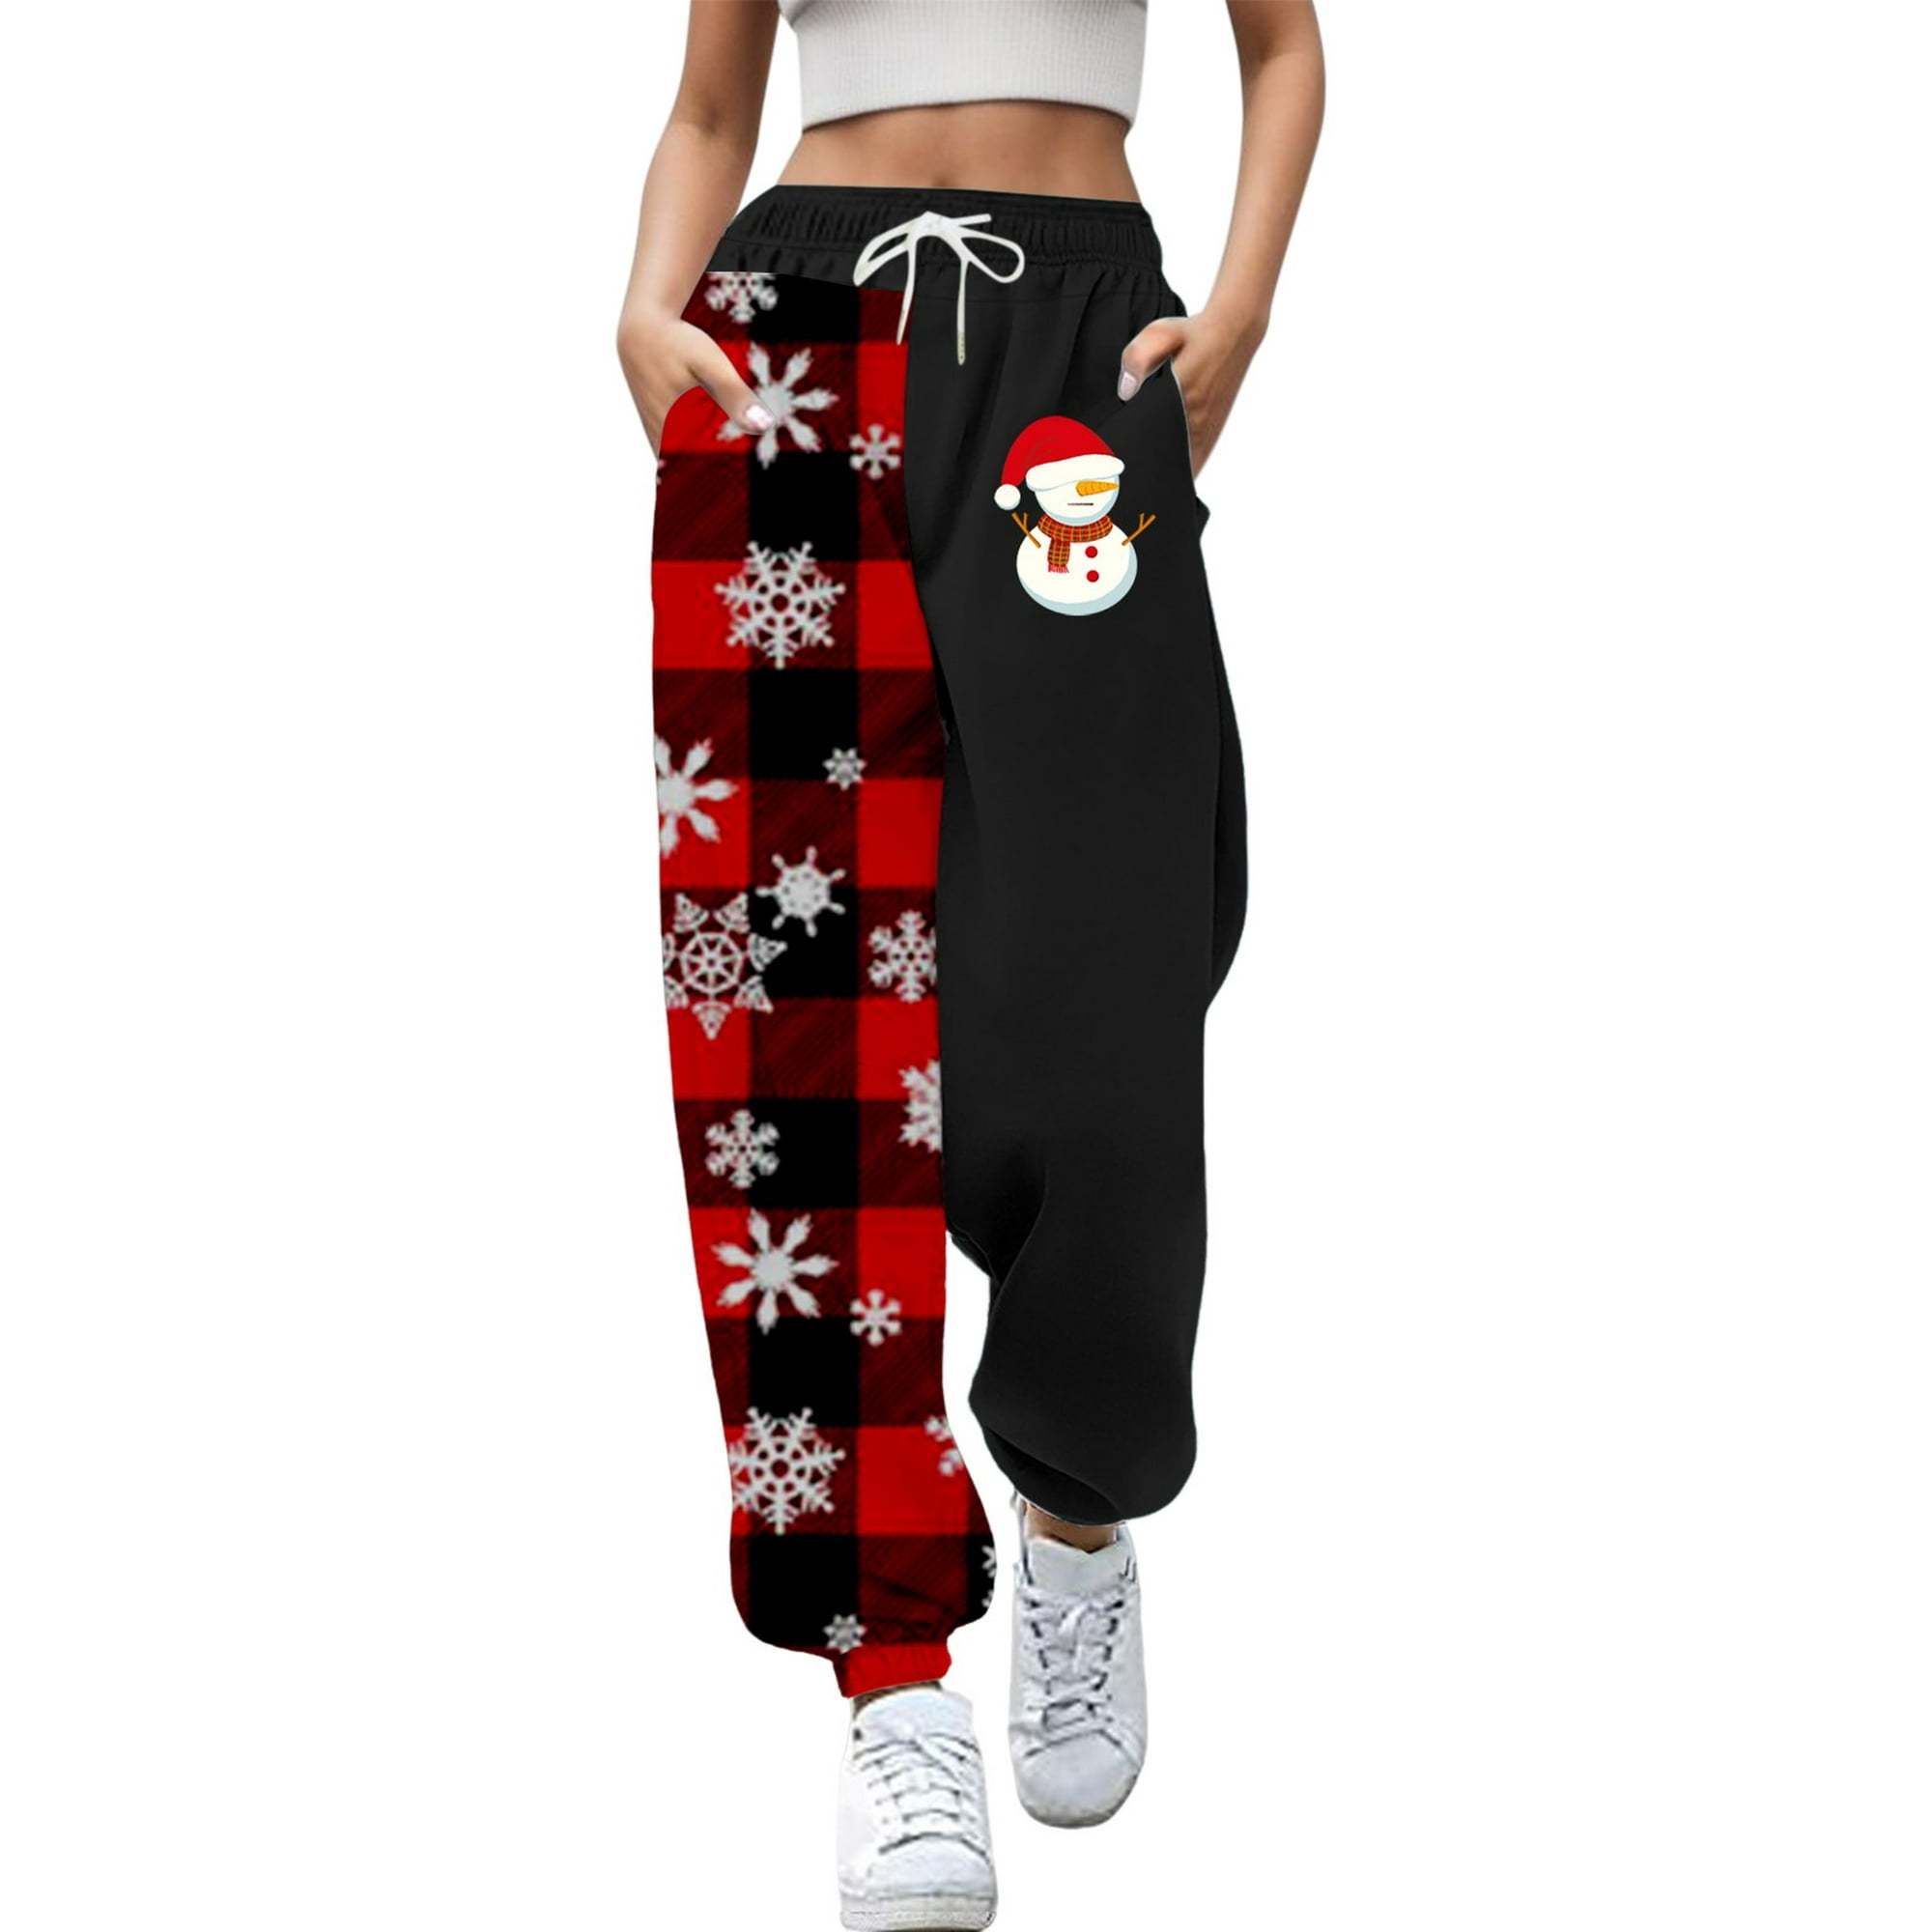 Gibobby pantalones afelpados para mujer Mujer Otoño e Invierno Casual moda  Navidad divertido impreso cintura elástica pantalones deportivos pantalones